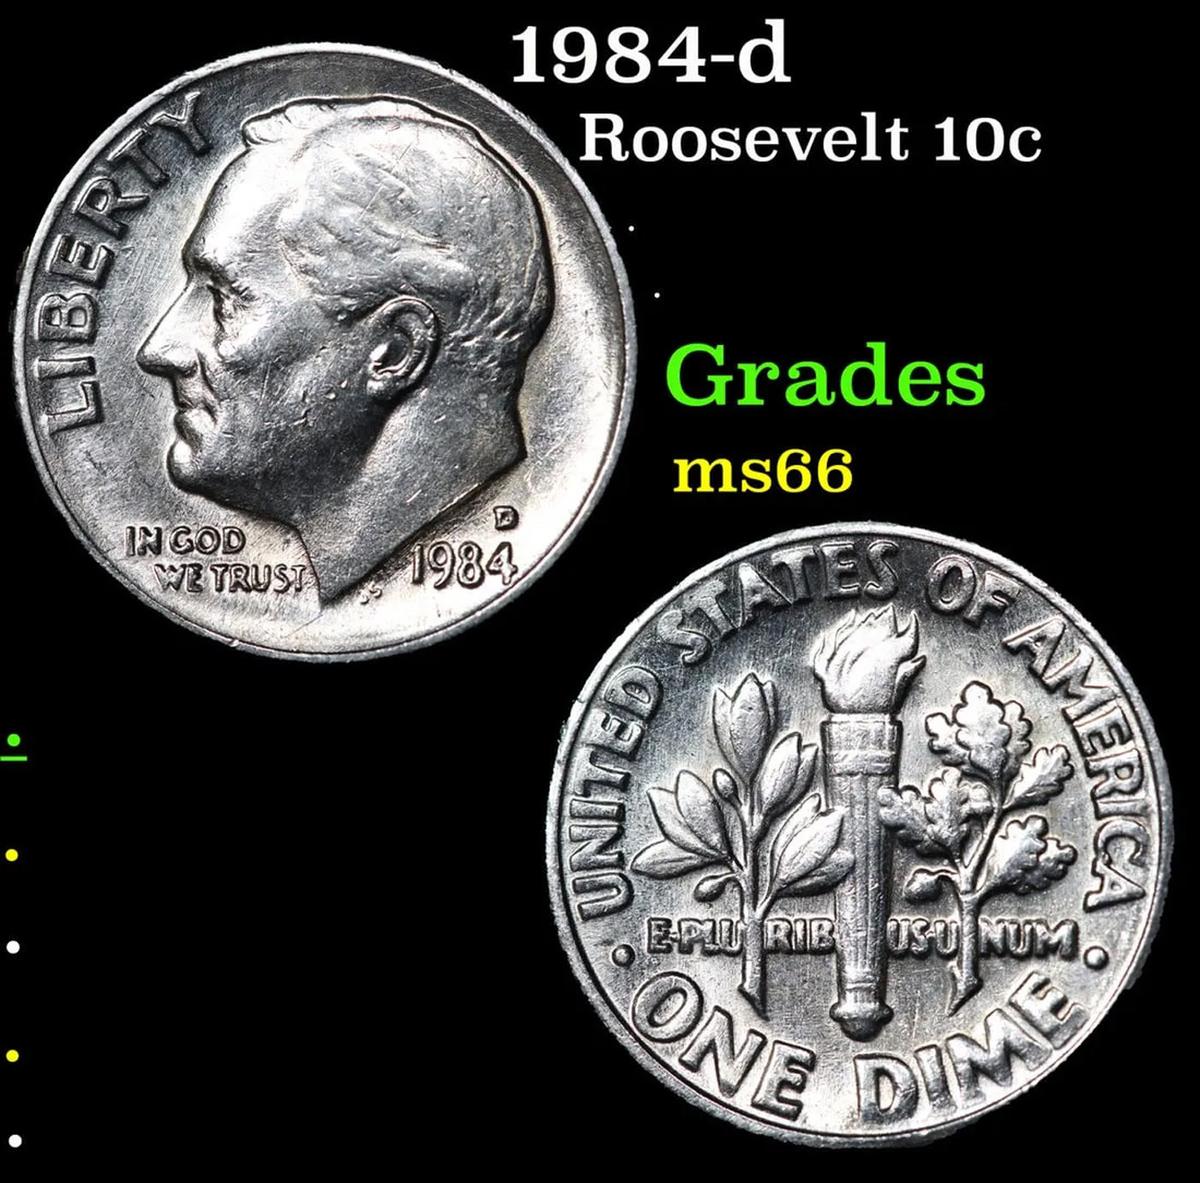 1955-d Roosevelt Dime 10c Grades Gem++ Full Bands